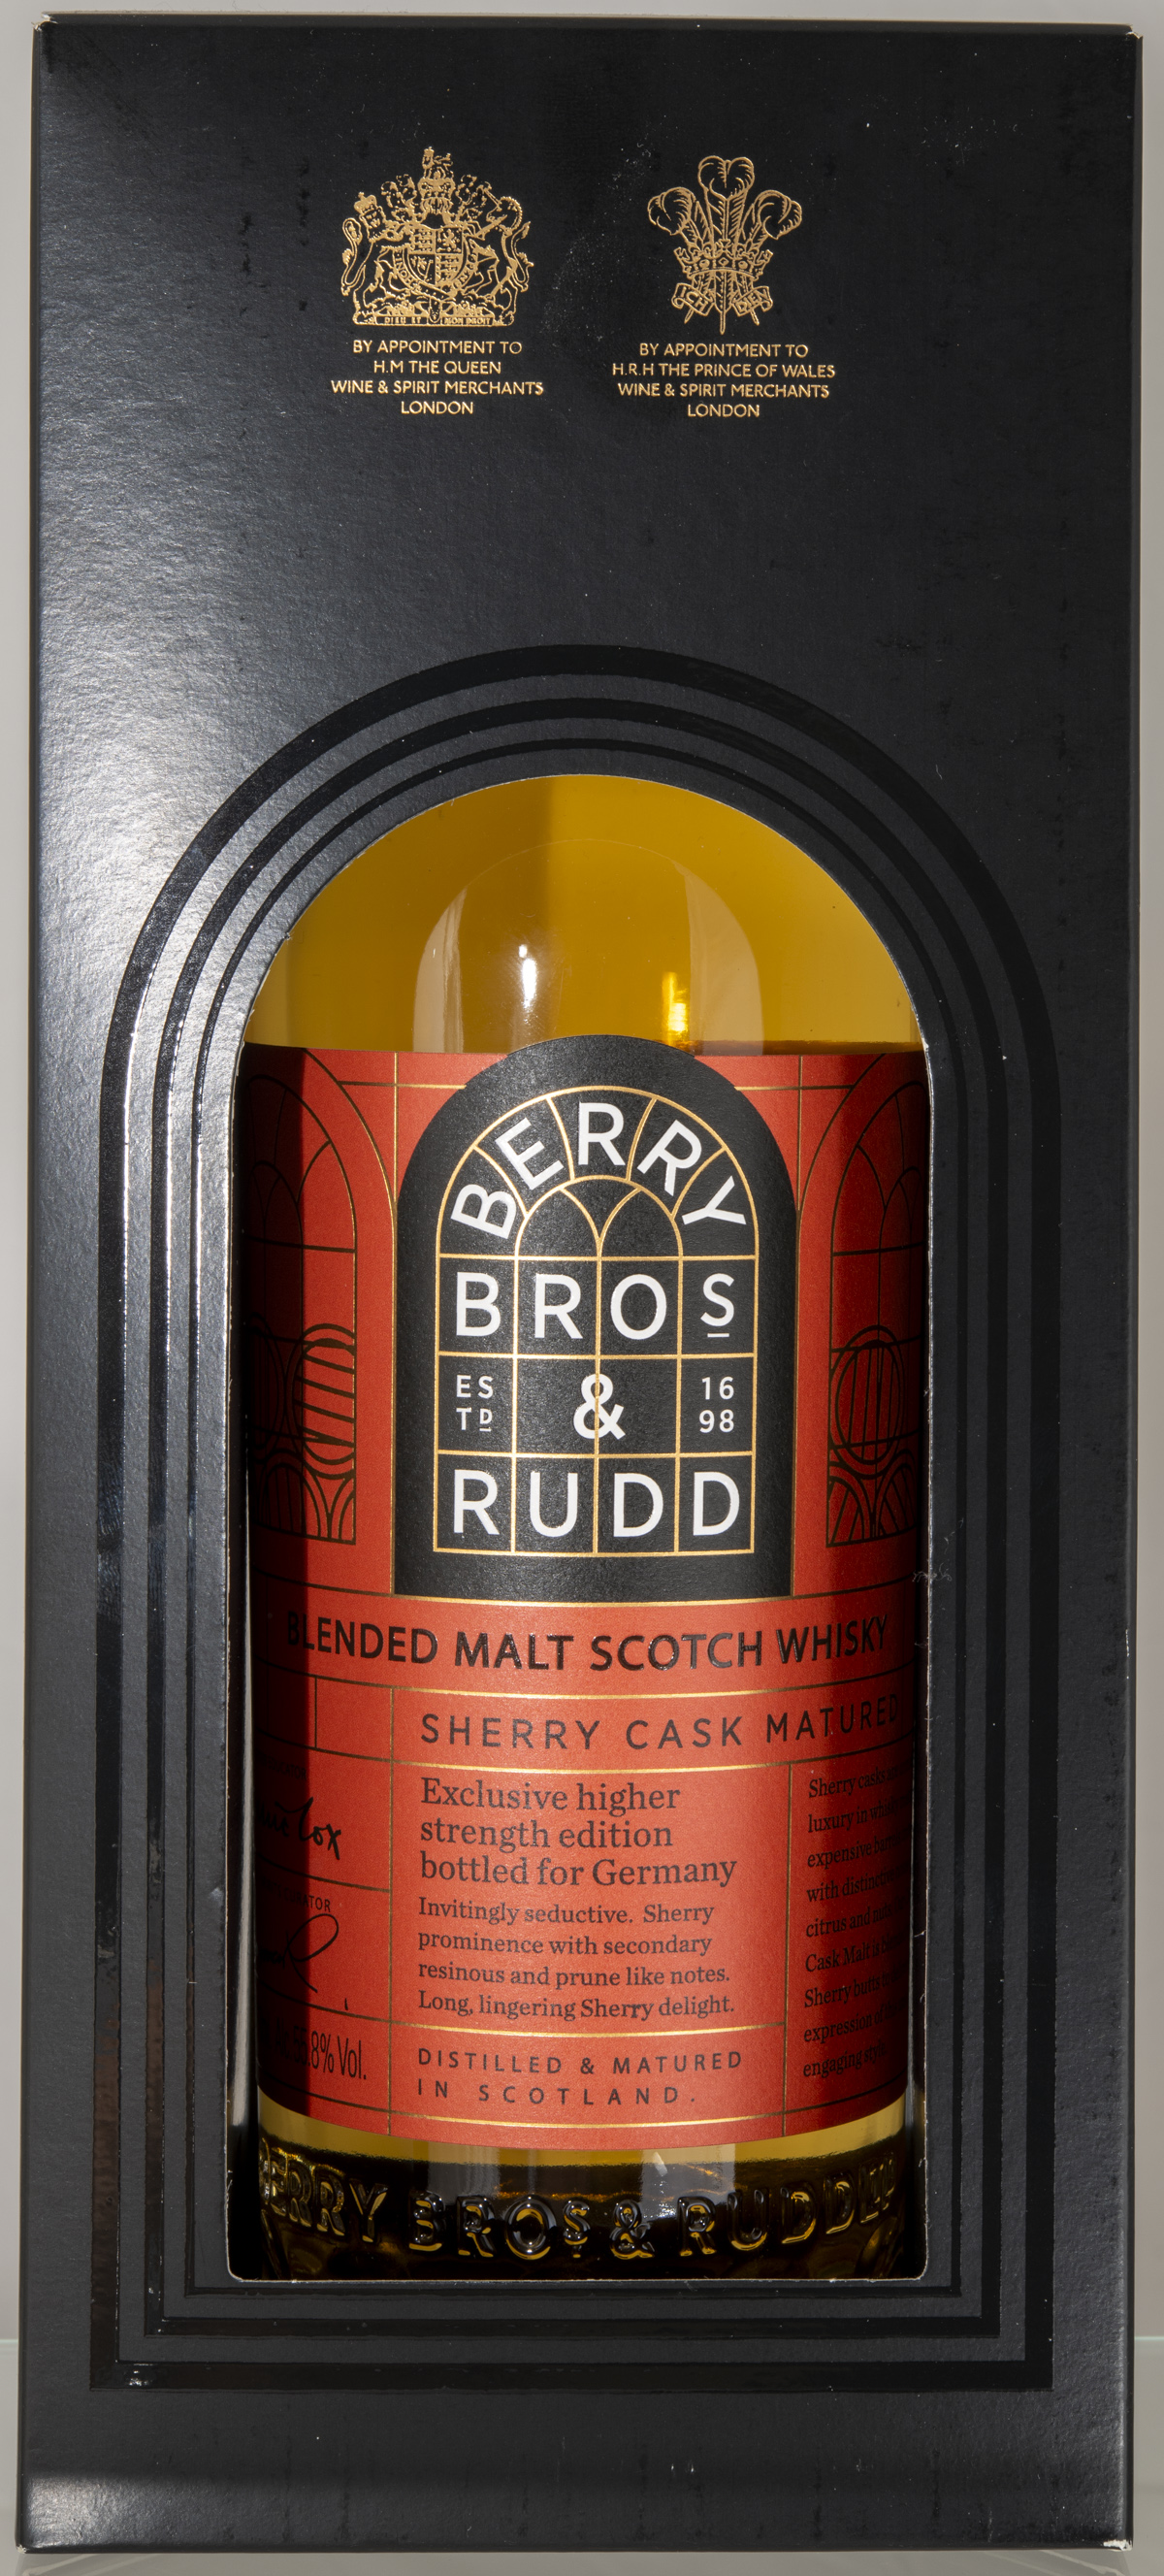 Billede: D85_8304 - Berry Bros and Rudd - Sherry Cask Matured - box front.jpg